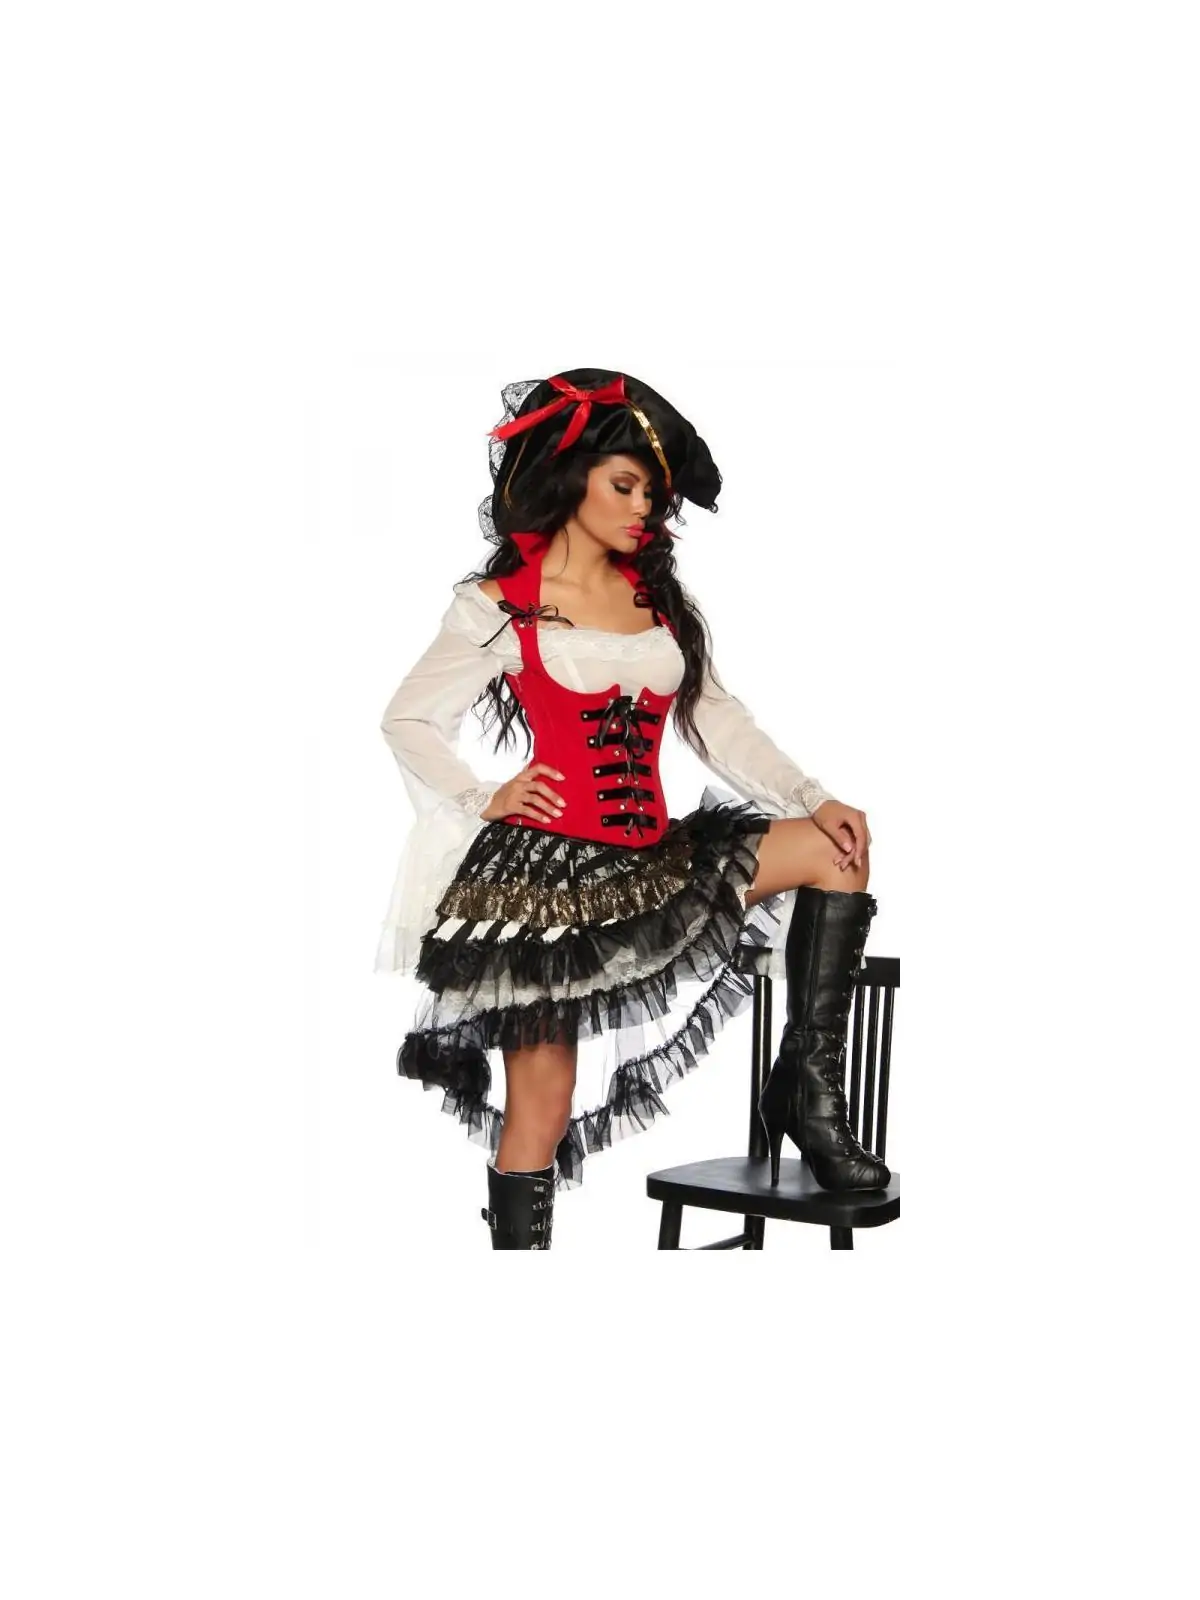 Piratenkostüm rot/schwarz kaufen - Fesselliebe